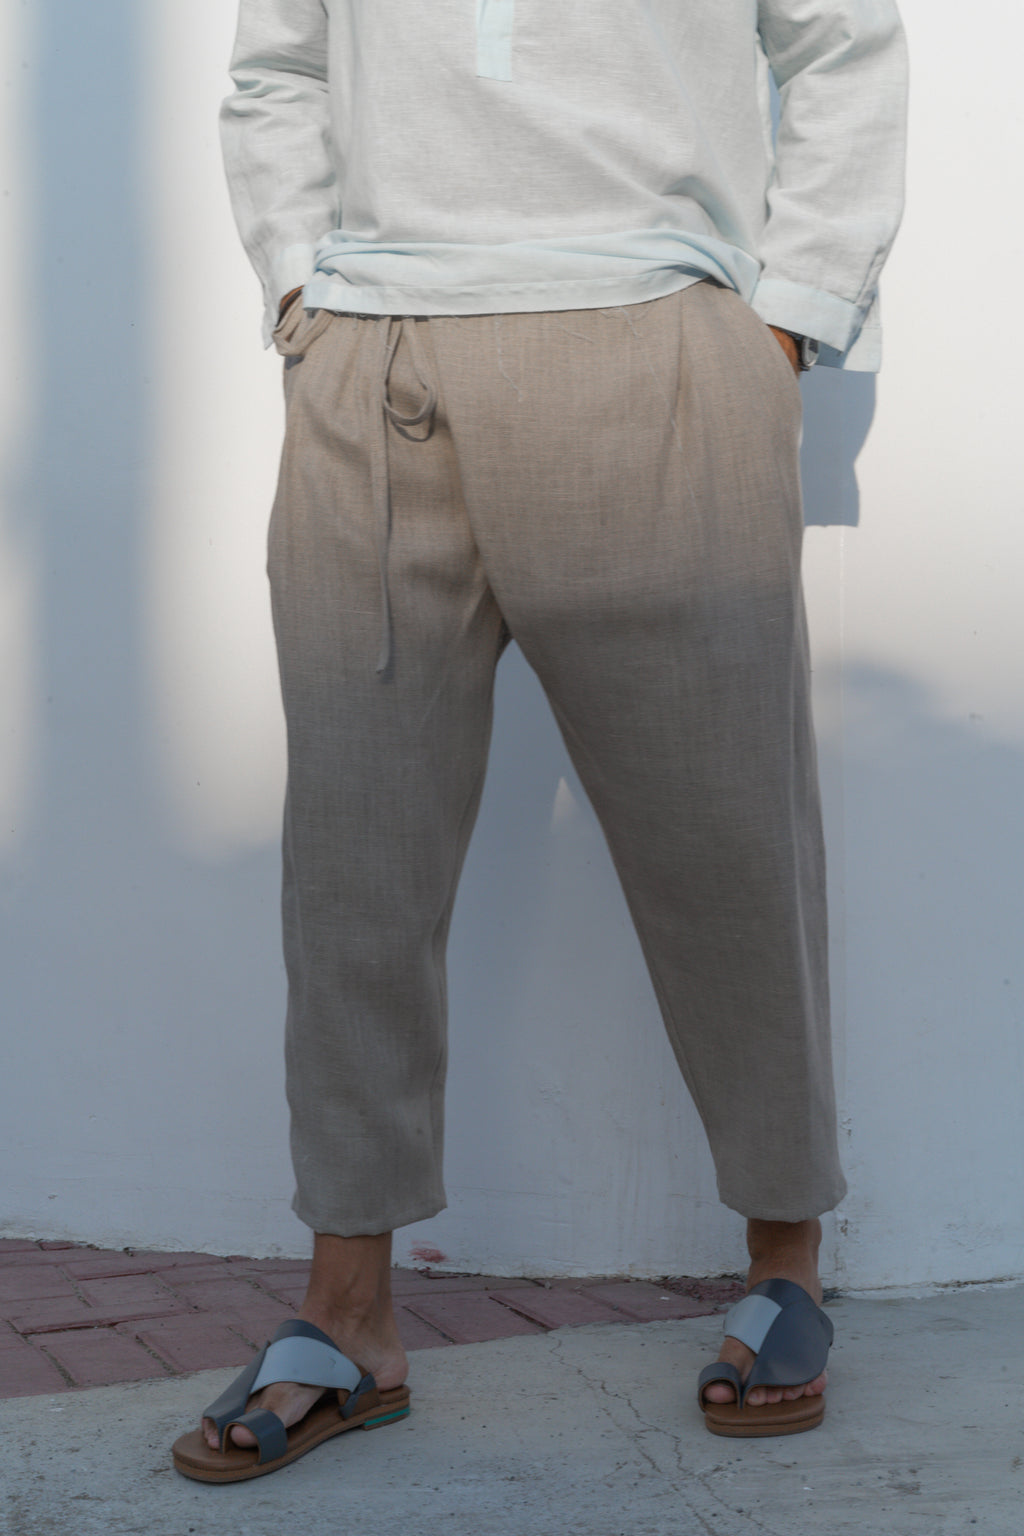 ARACHIS men's linen pants